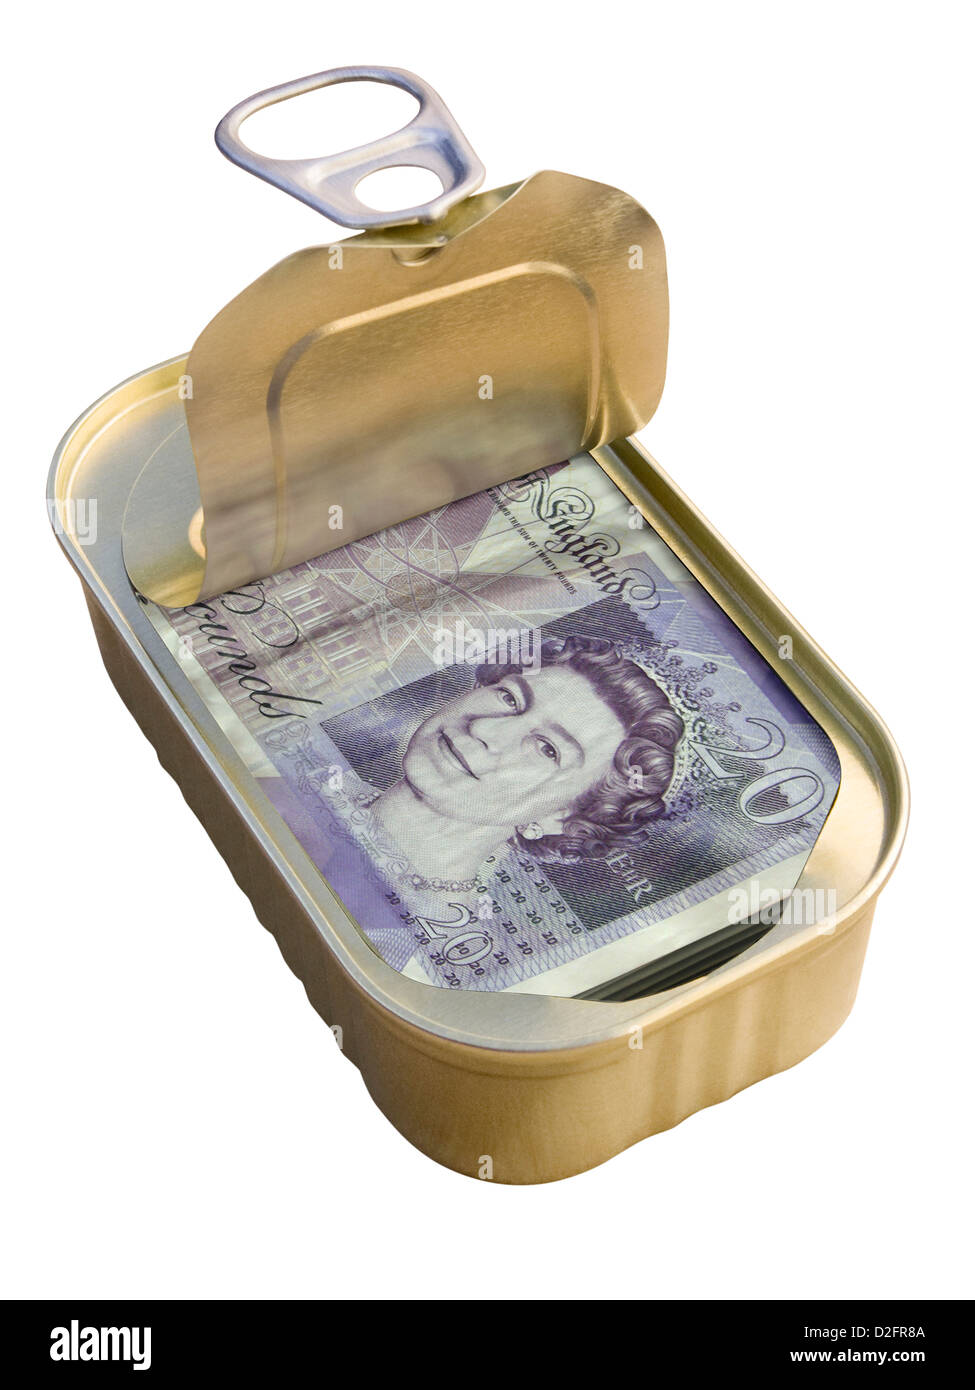 Anello di sicurezza a strappo stagno contenente £20 note su sfondo bianco - Nascosto / offshore / paradiso fiscale / concetto di sicurezza Foto Stock